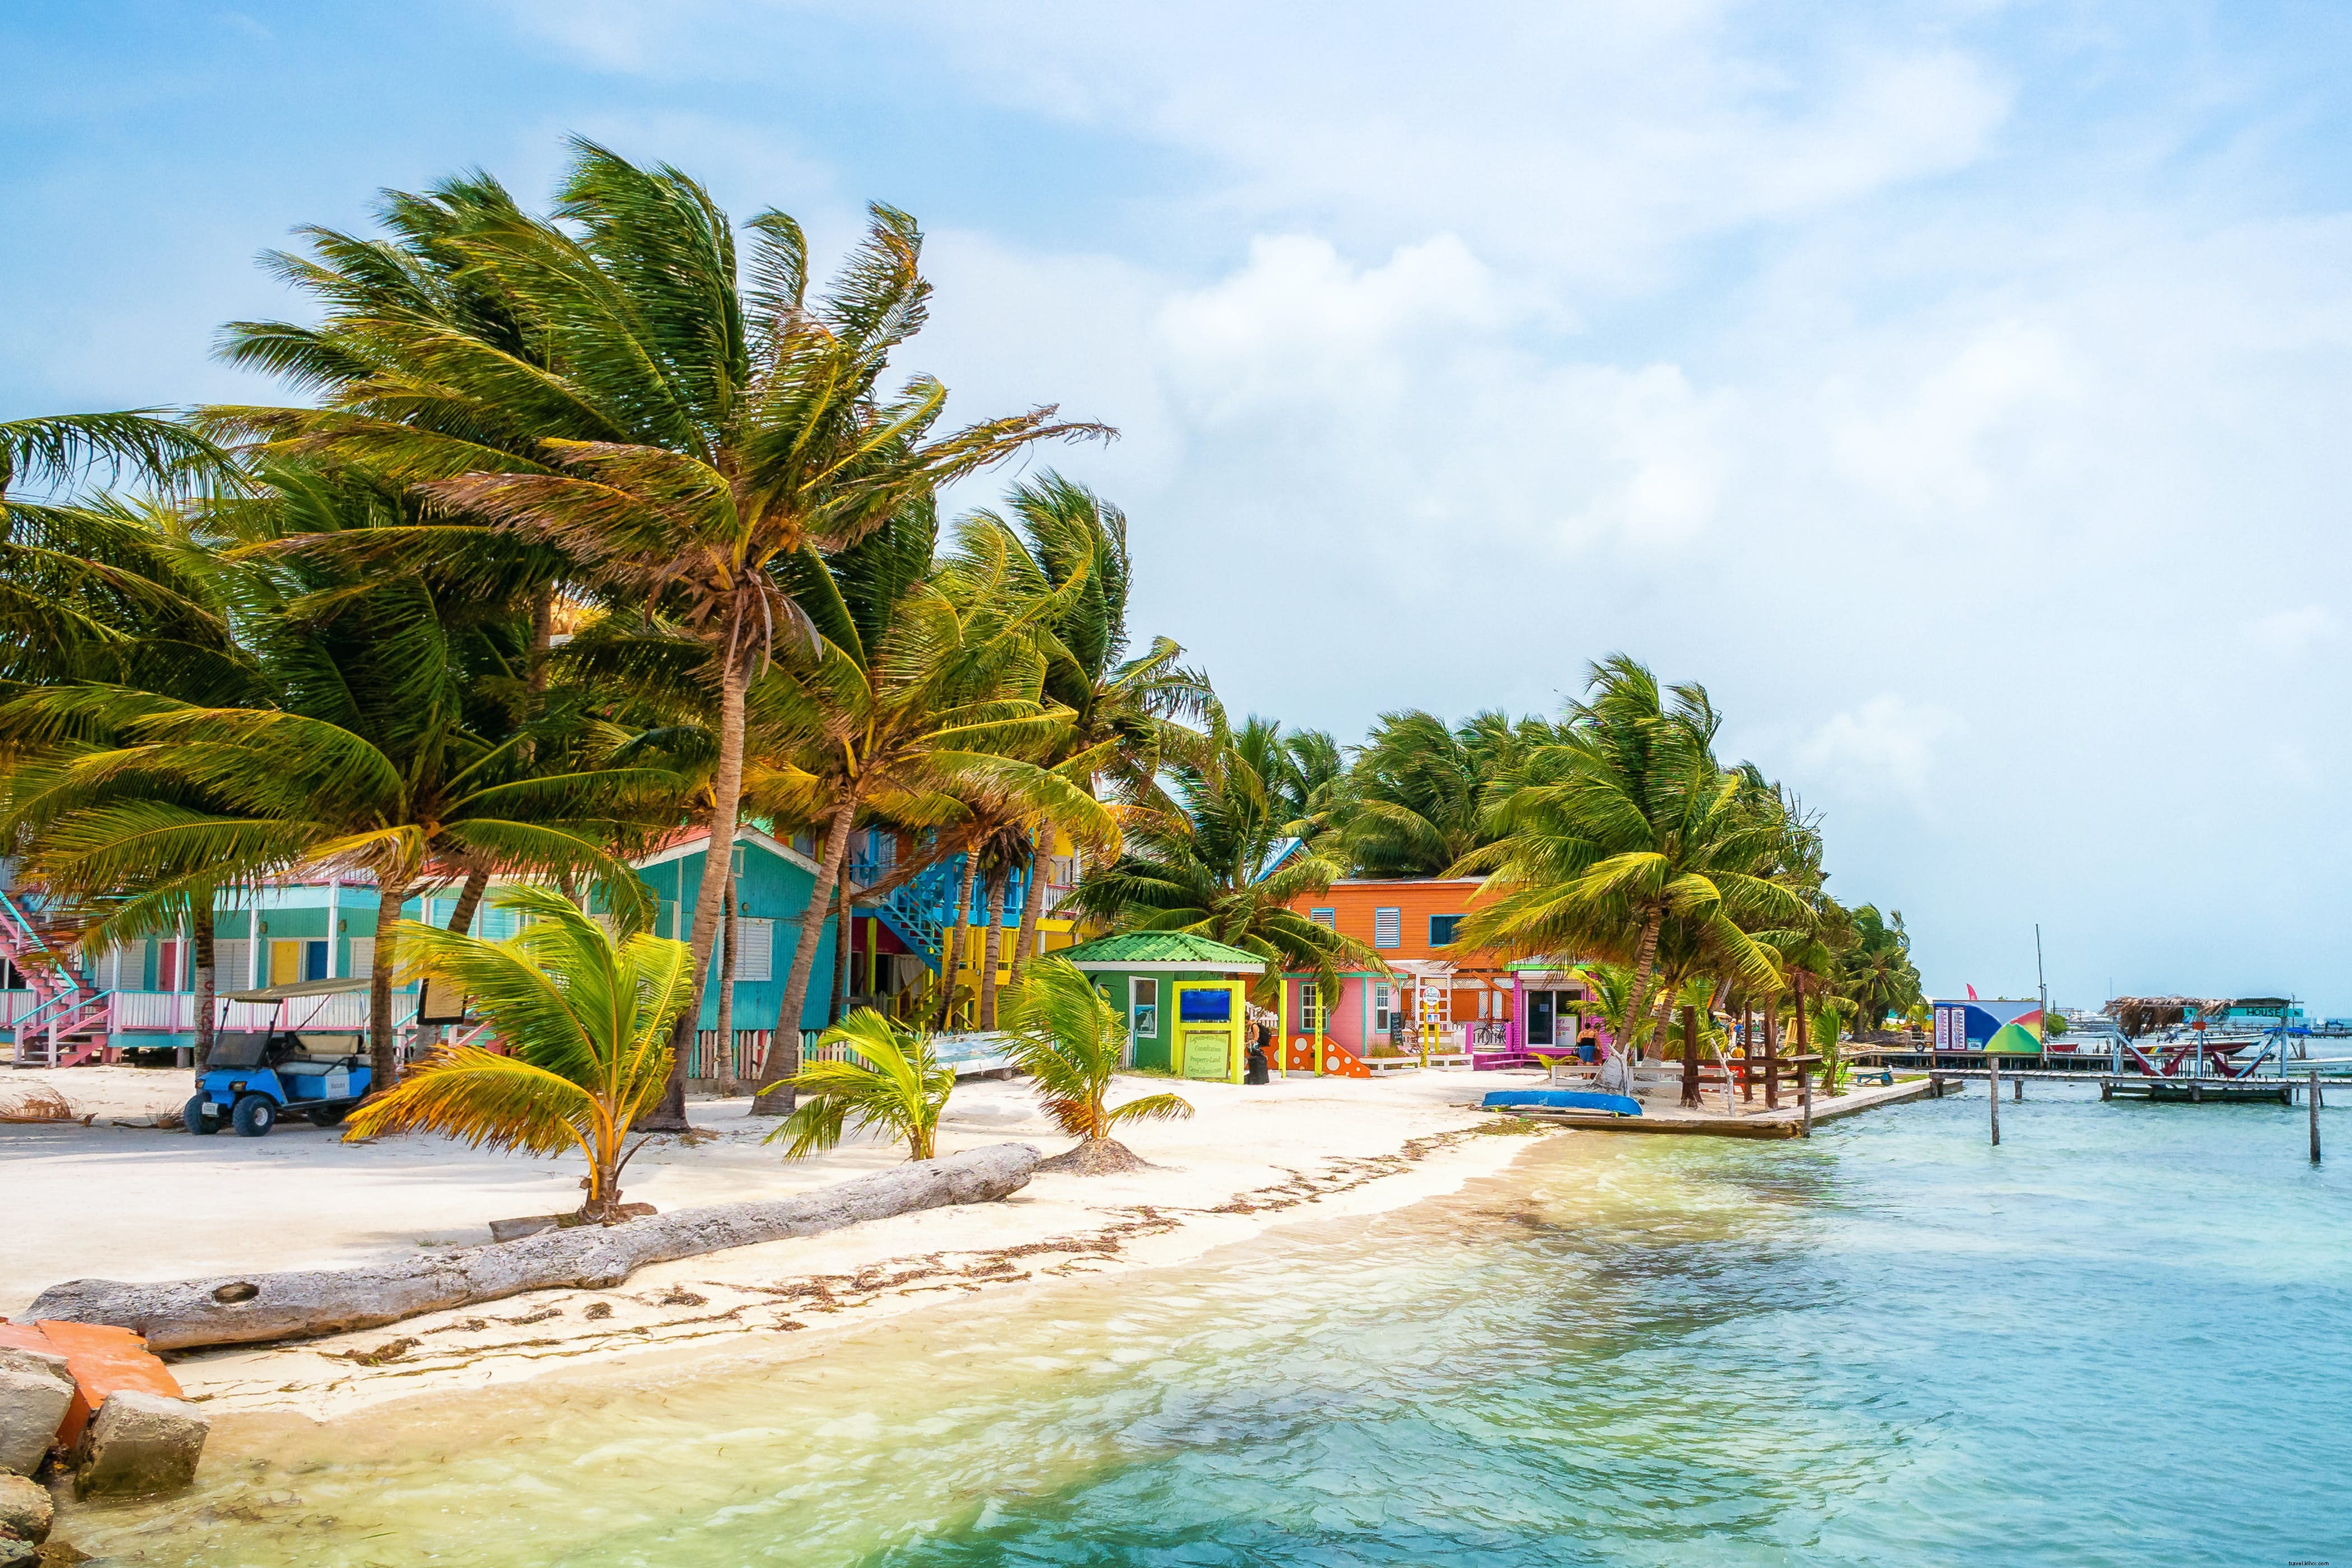 Il Belize annuncia la data di riapertura 